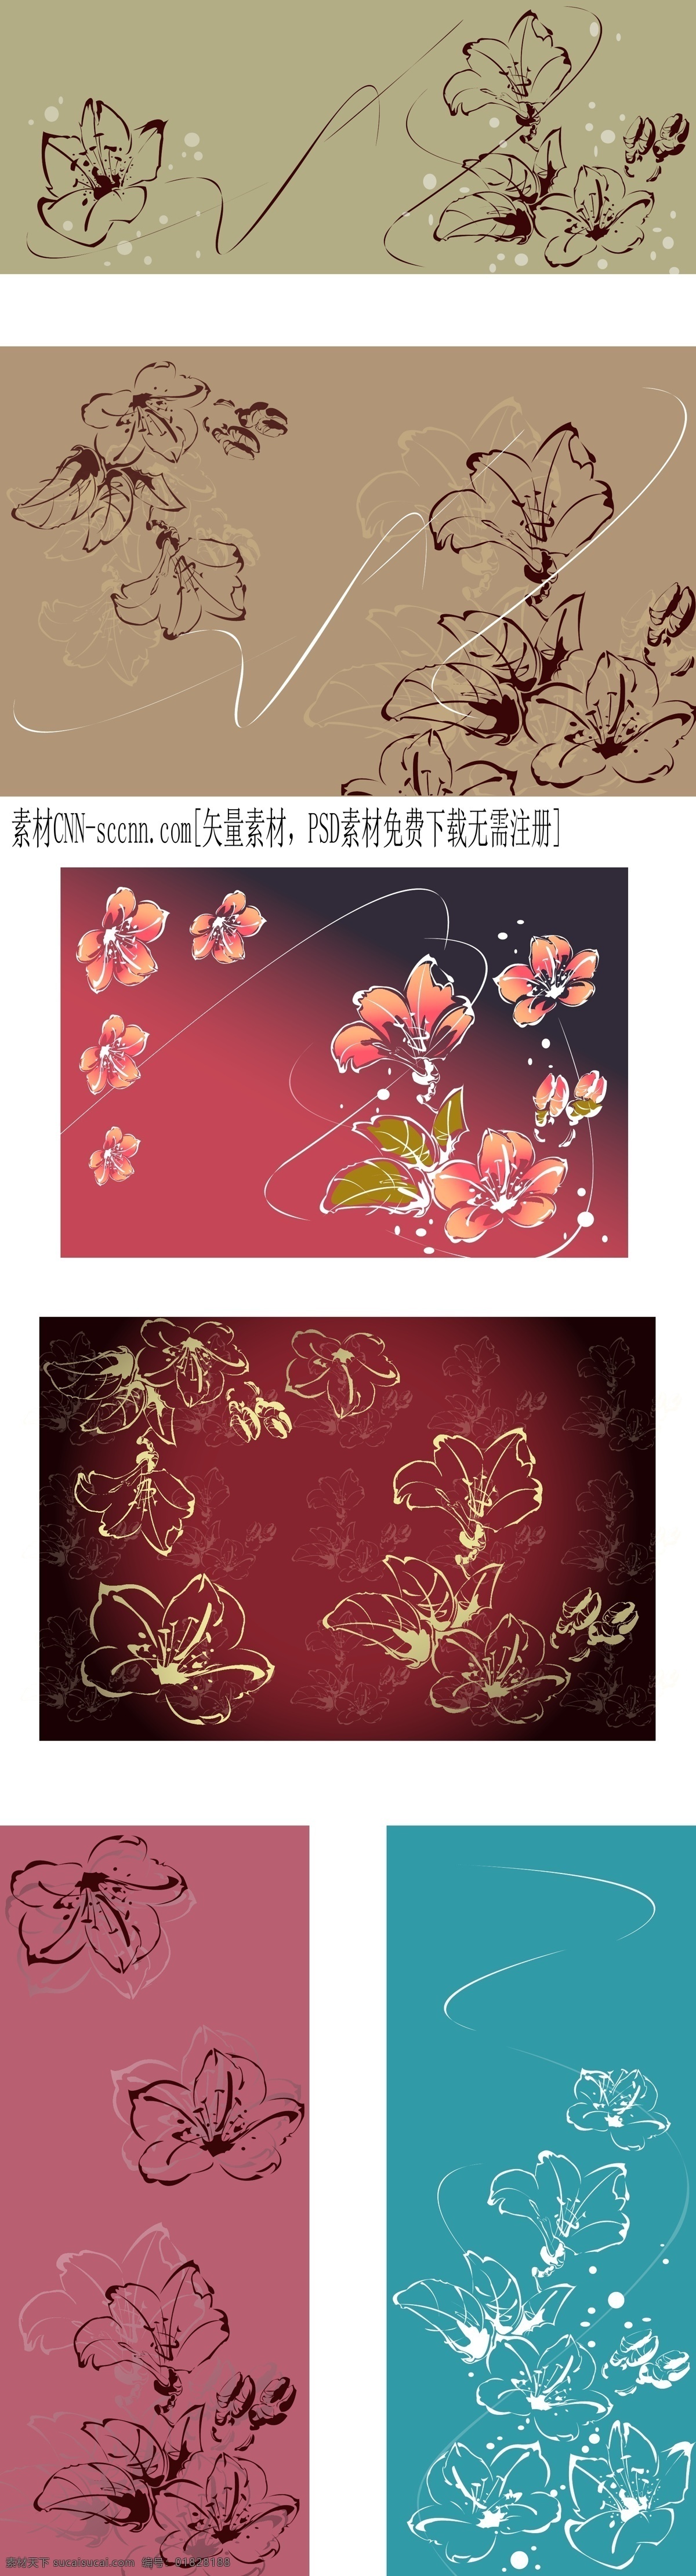 花瓣 花朵线稿 花蕾 模板 设计稿 手绘鲜花 素材元素 手绘 鲜花 线 稿 矢量 线描花卉 彩绘 源文件 矢量图